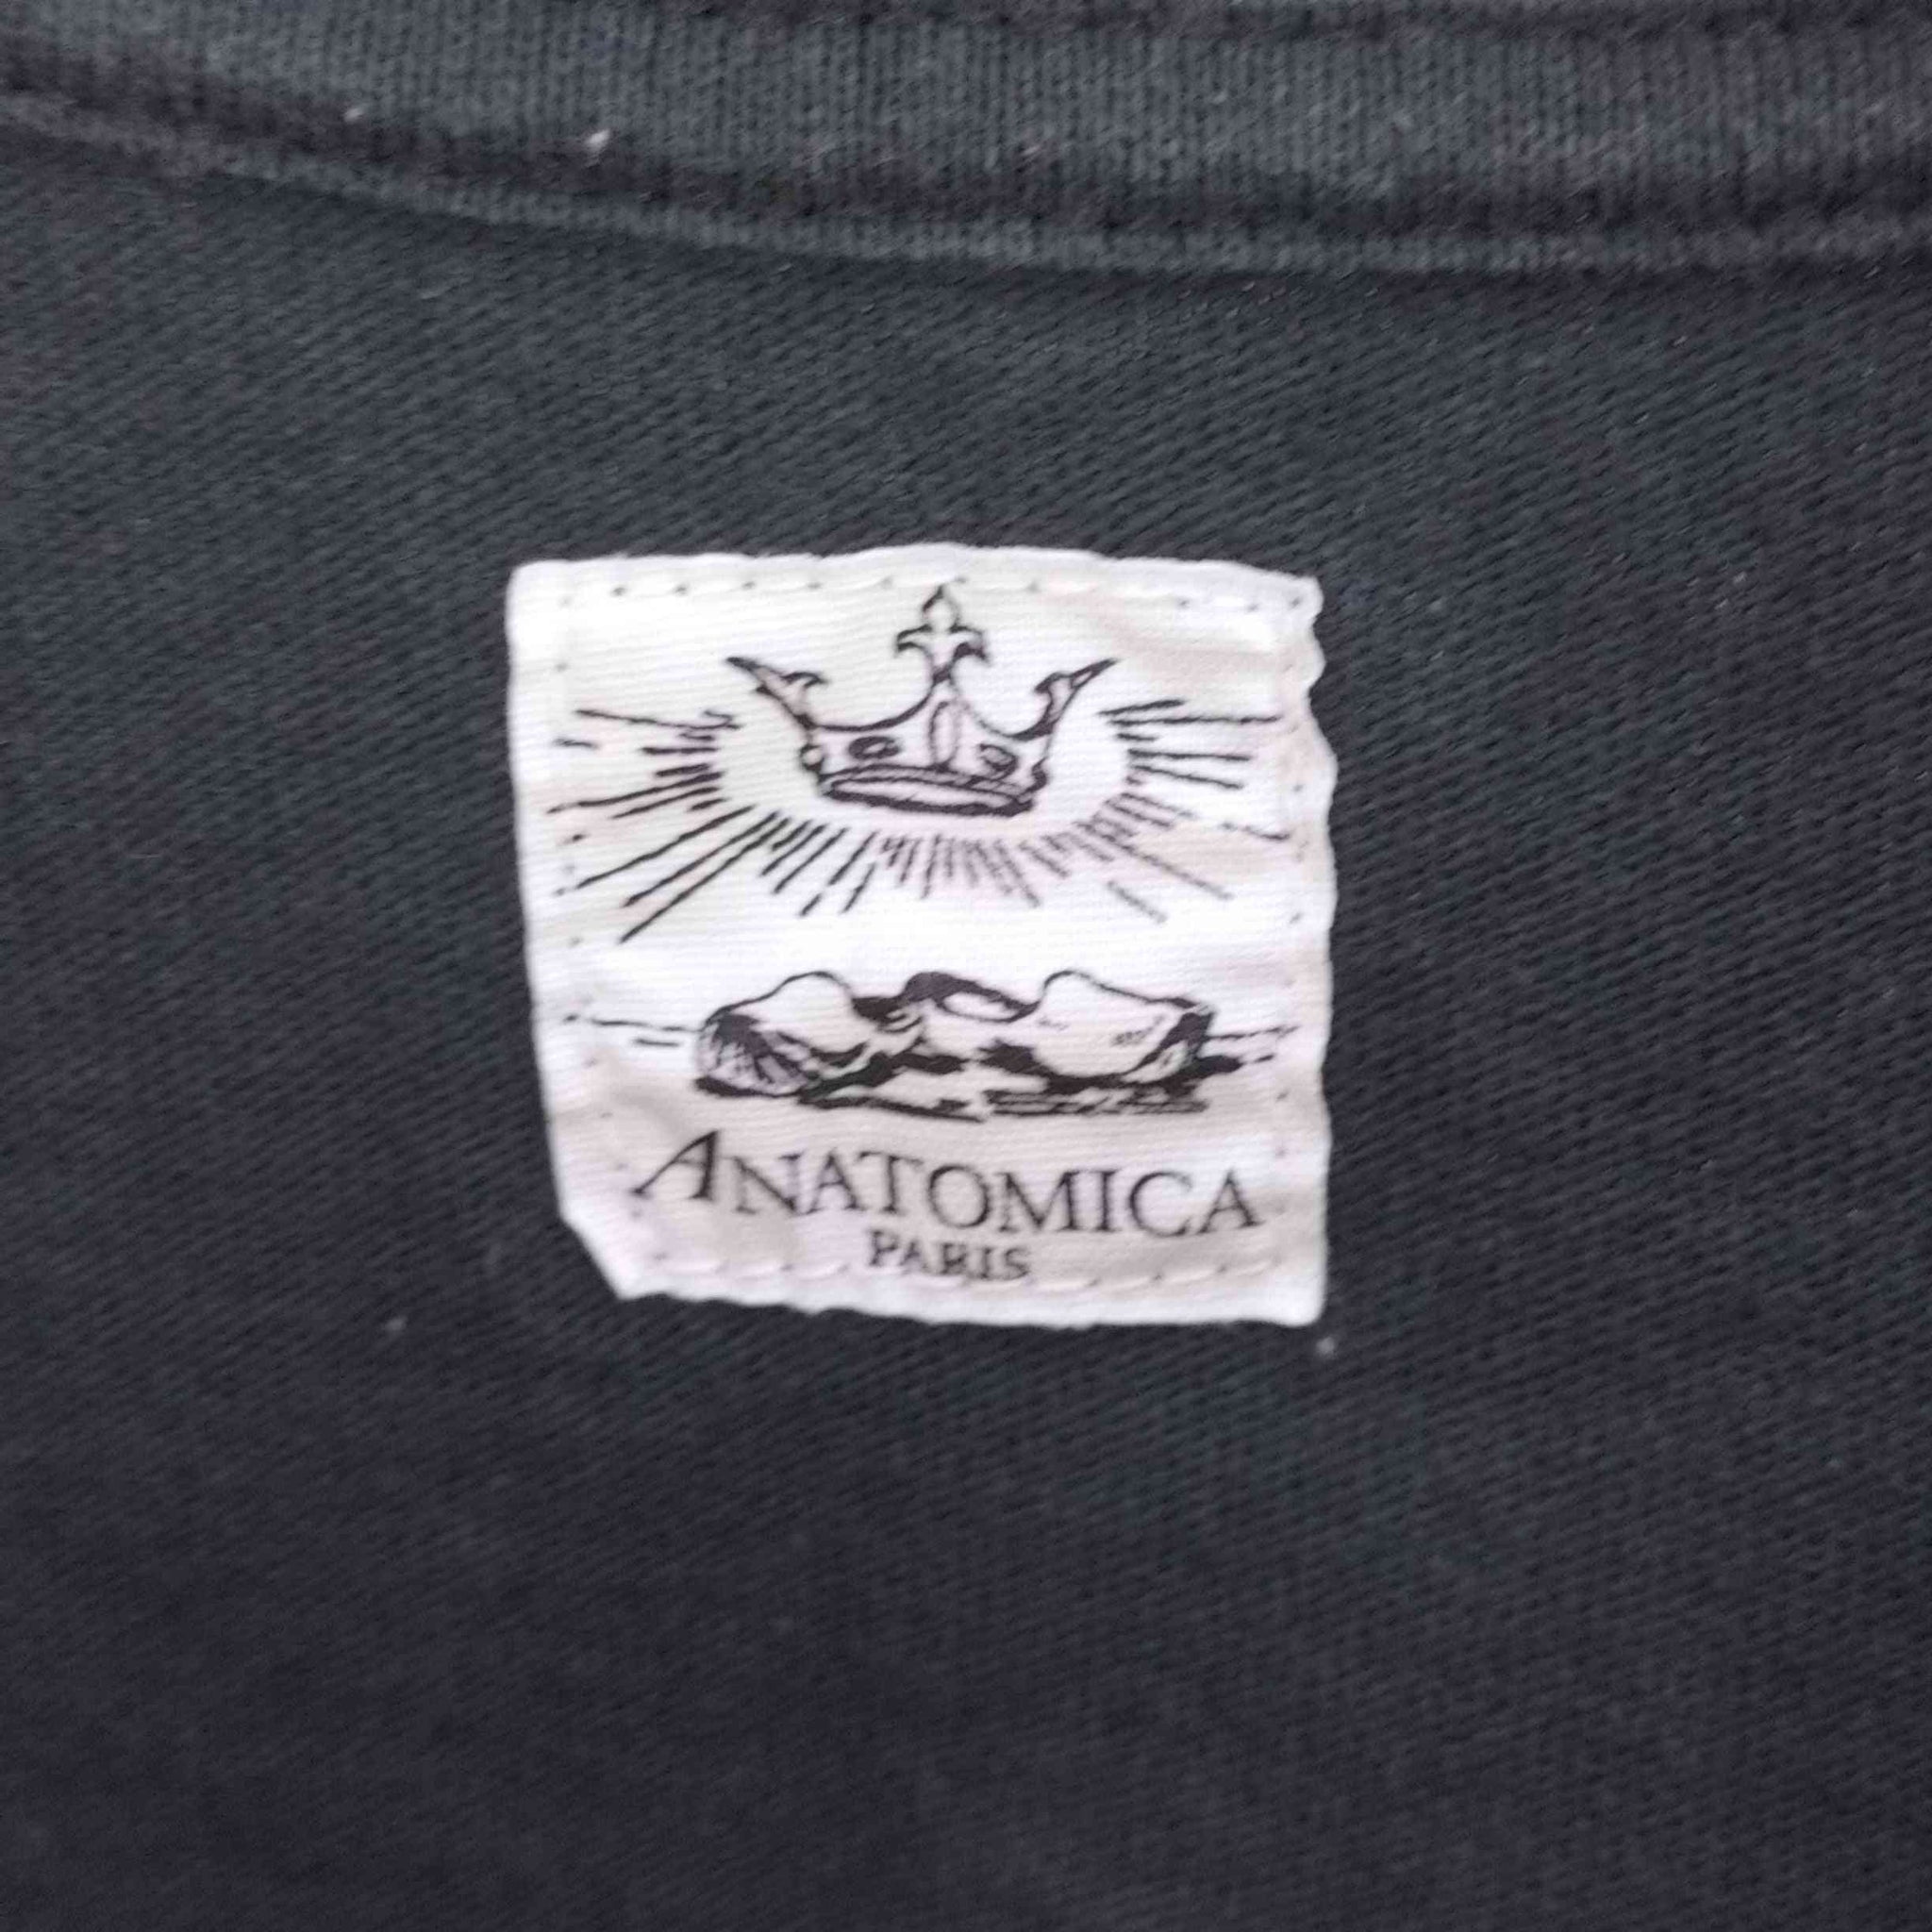 ANATOMICA(アナトミカ)USA製 クルーネックポケットTシャツ